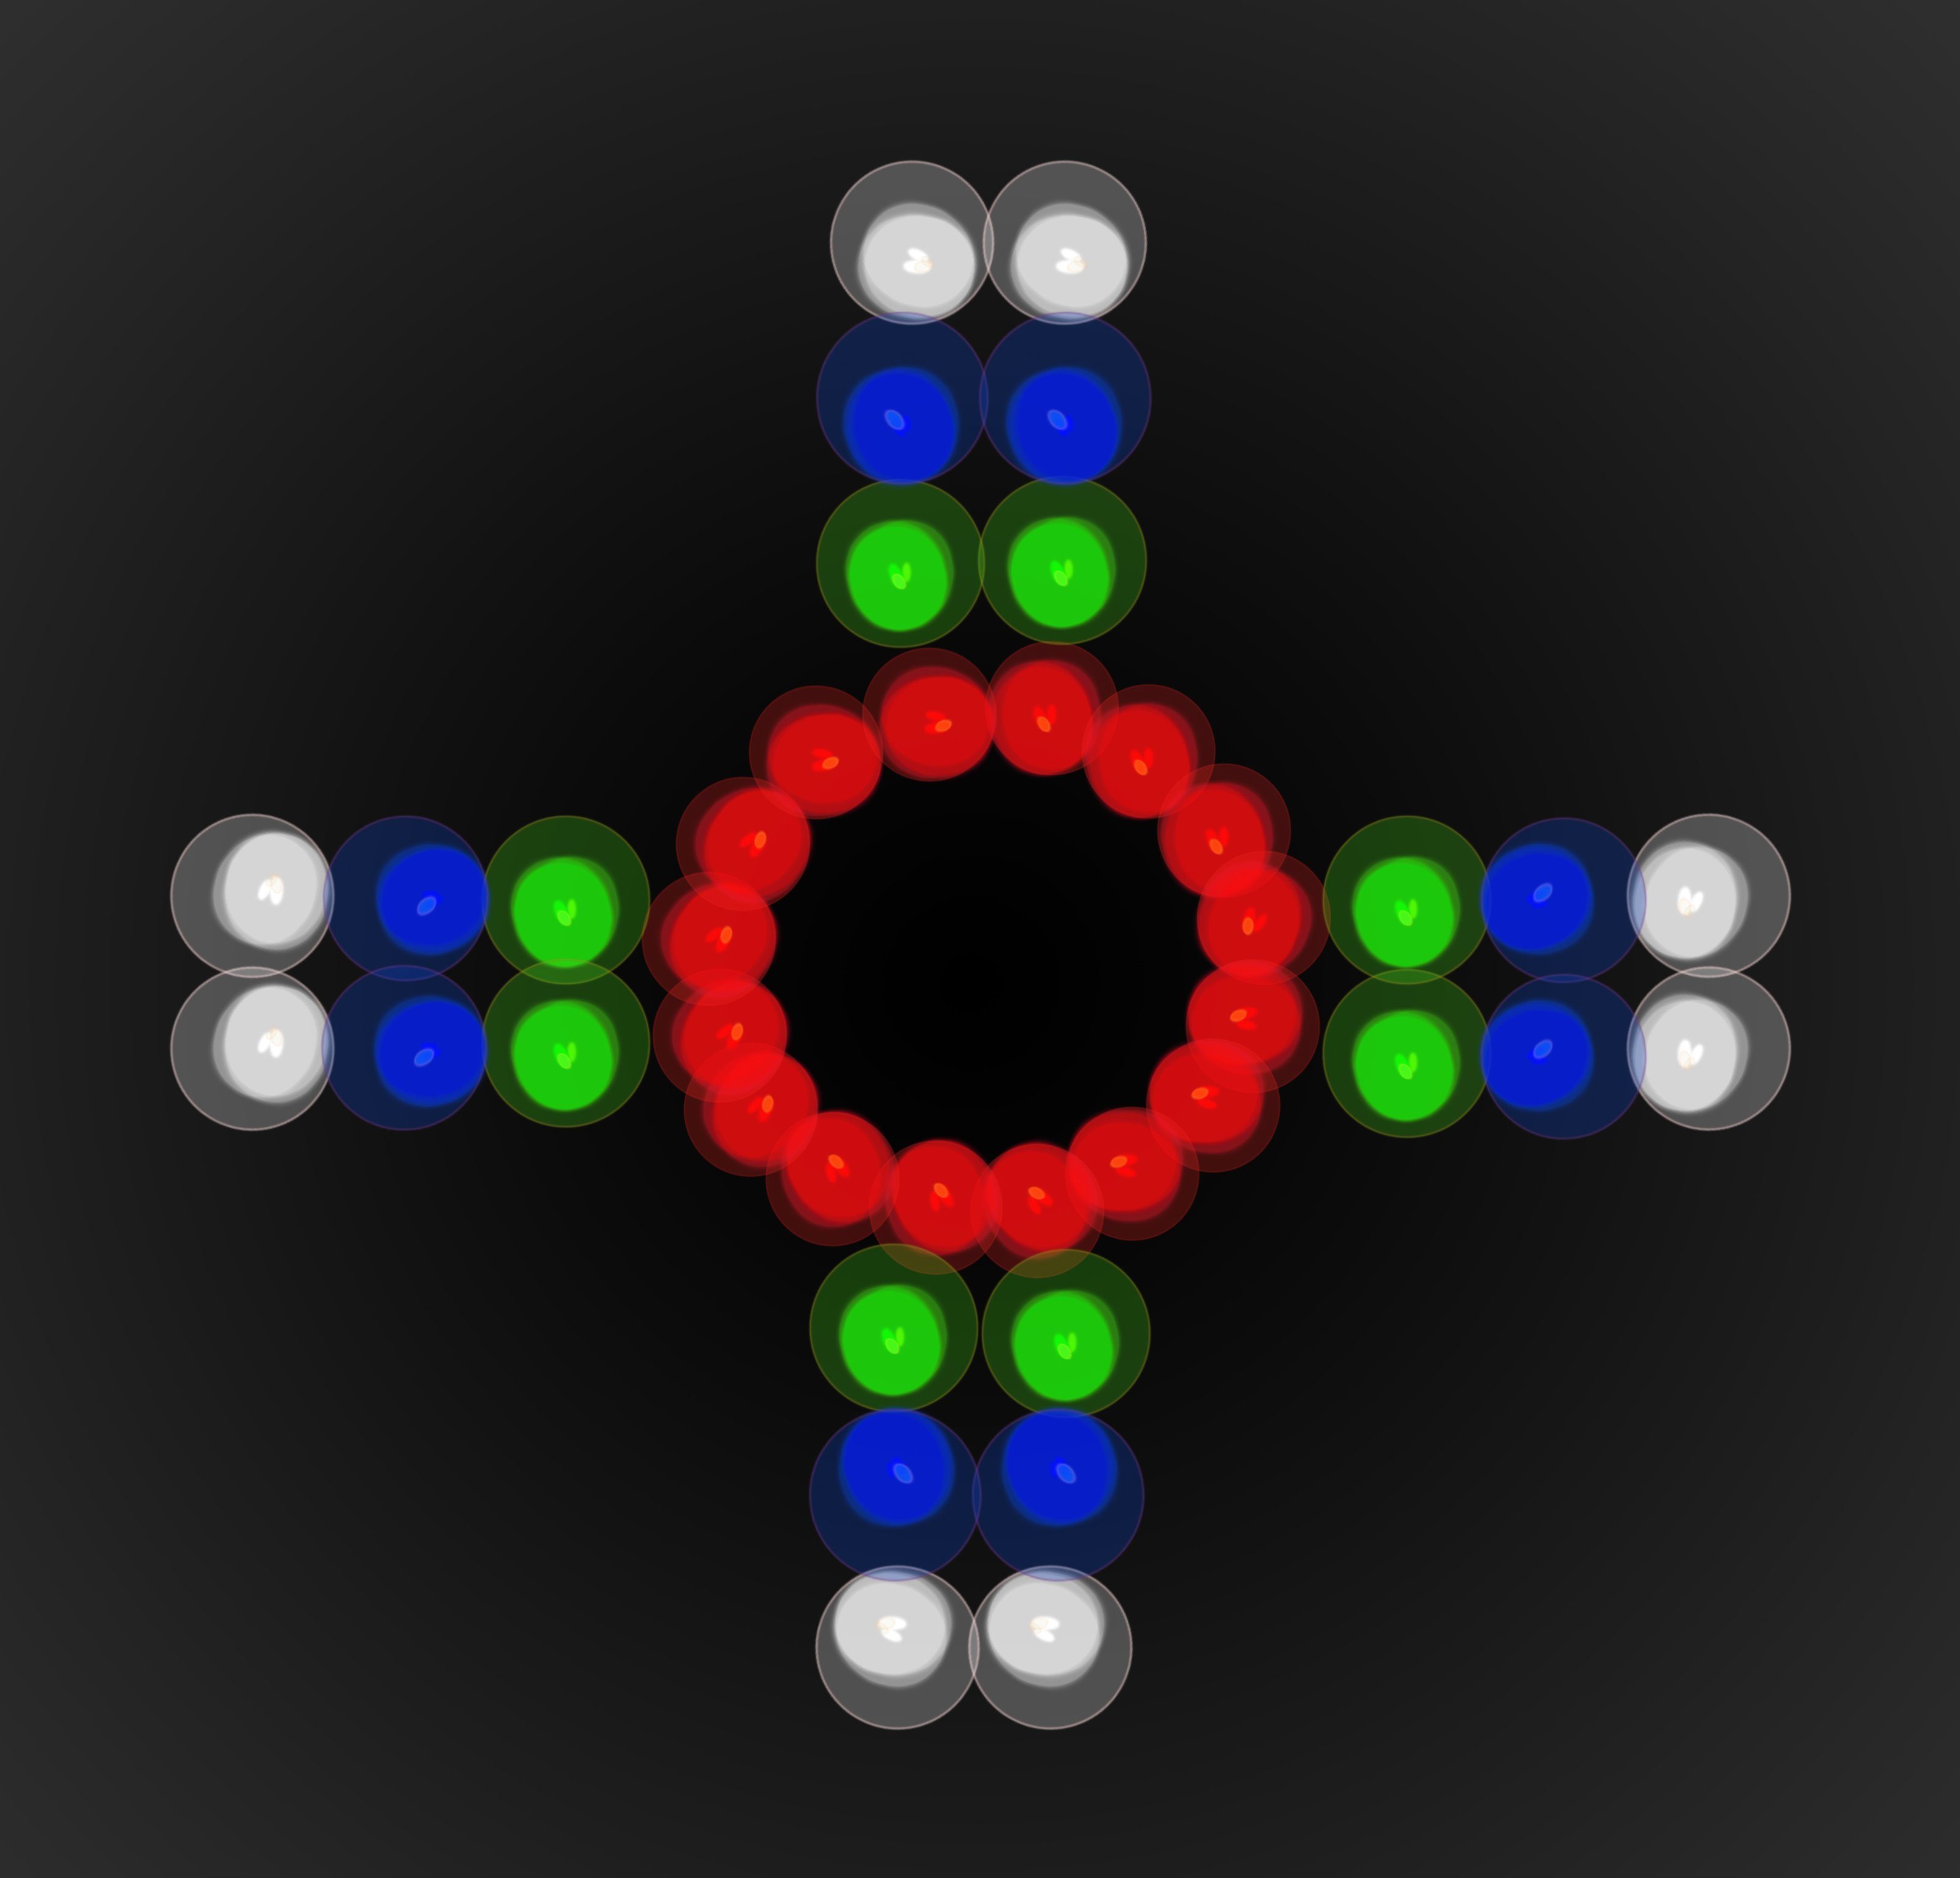 Blau,Grün,Rot,Weiß Dynamischer einstellbar, Stroboskop- Discolicht Farbeffekte und LED LE-180, Strahleneffekt, Alecto